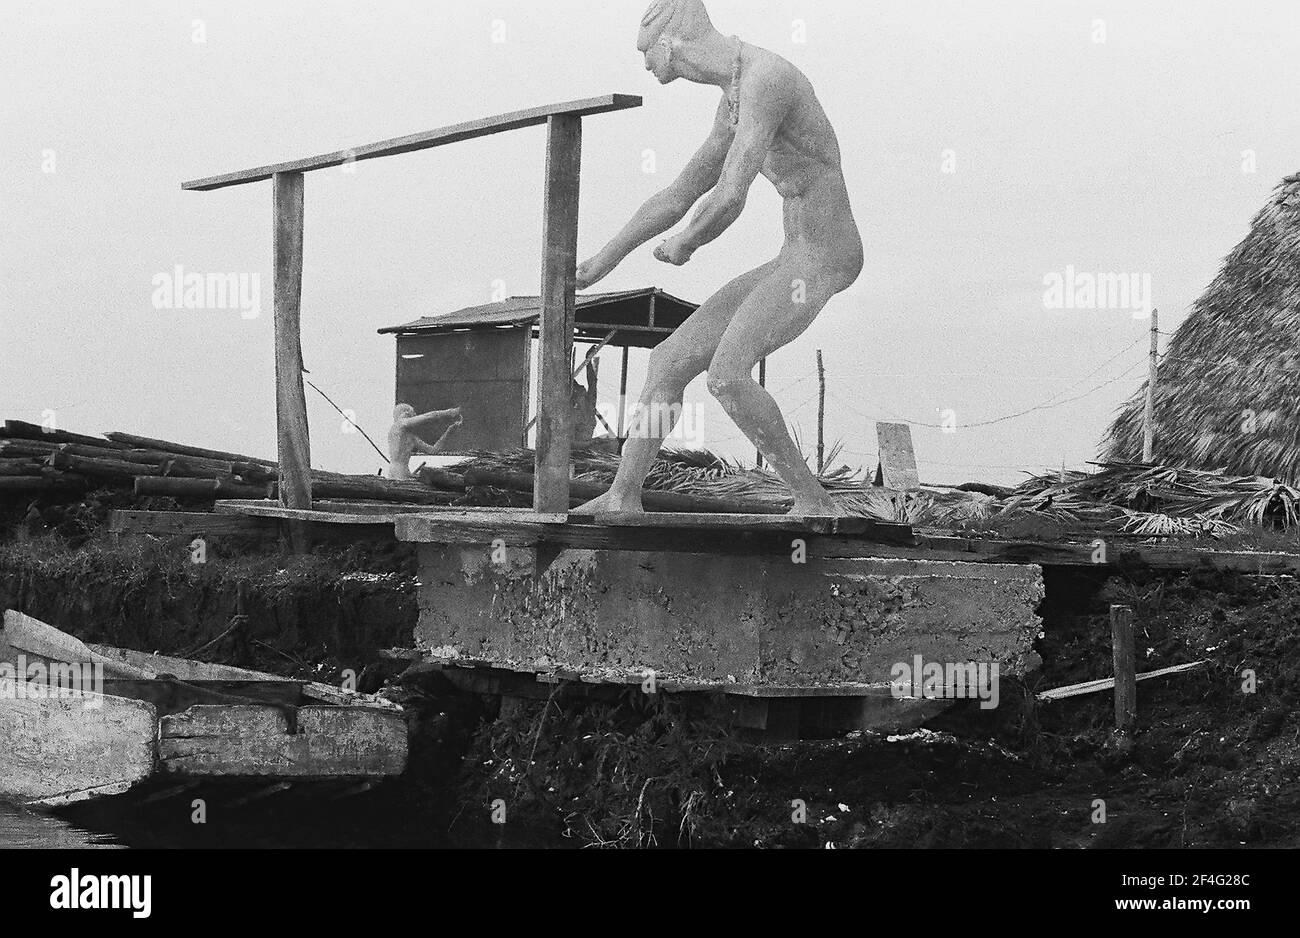 Resort costruito sulla palude drenata vicino a Baia dei Pigs, Cuba, provincia di Matanzas, Playa Giron, visto dalla barca sul canale d'acqua, con la statua presente, 1963. Dalla collezione di fotografie Deena Stryker. () Foto Stock